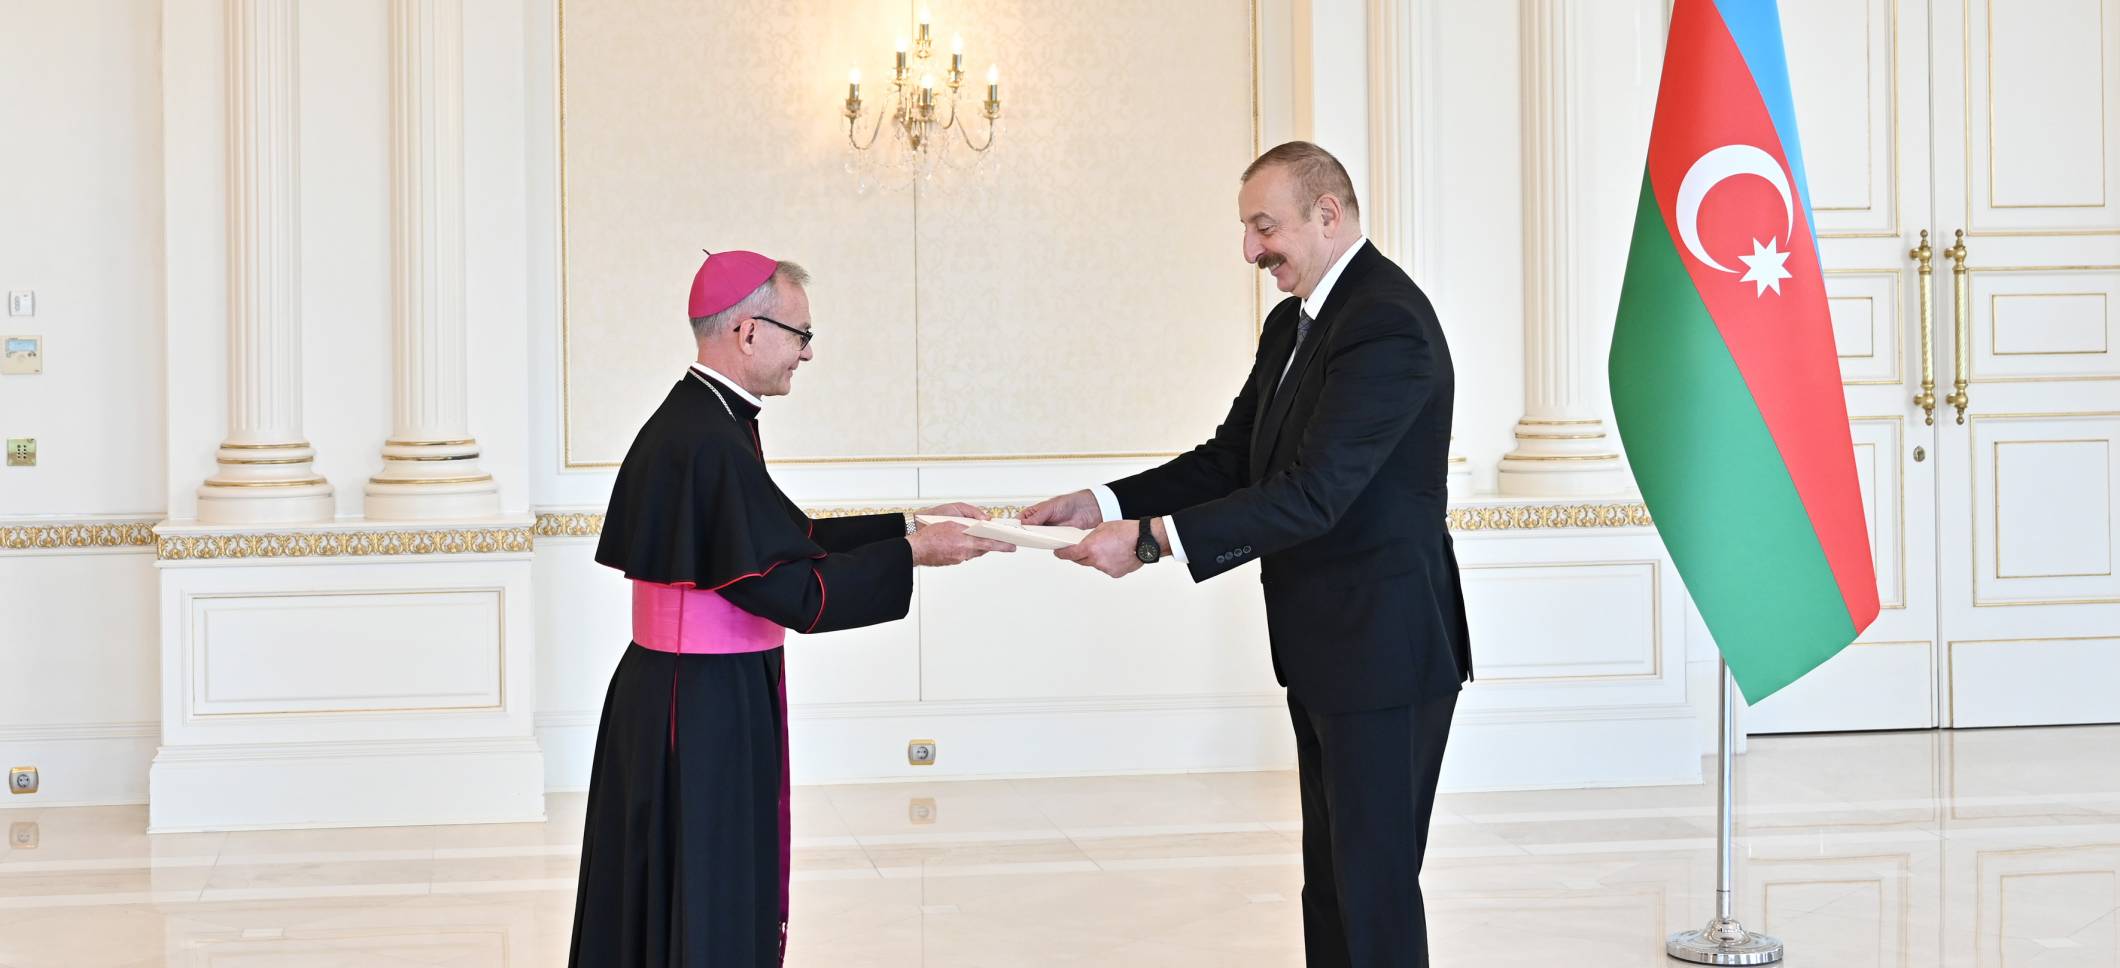 Ильхам Алиев принял верительные грамоты новоназначенного посла Ватикана в Азербайджане